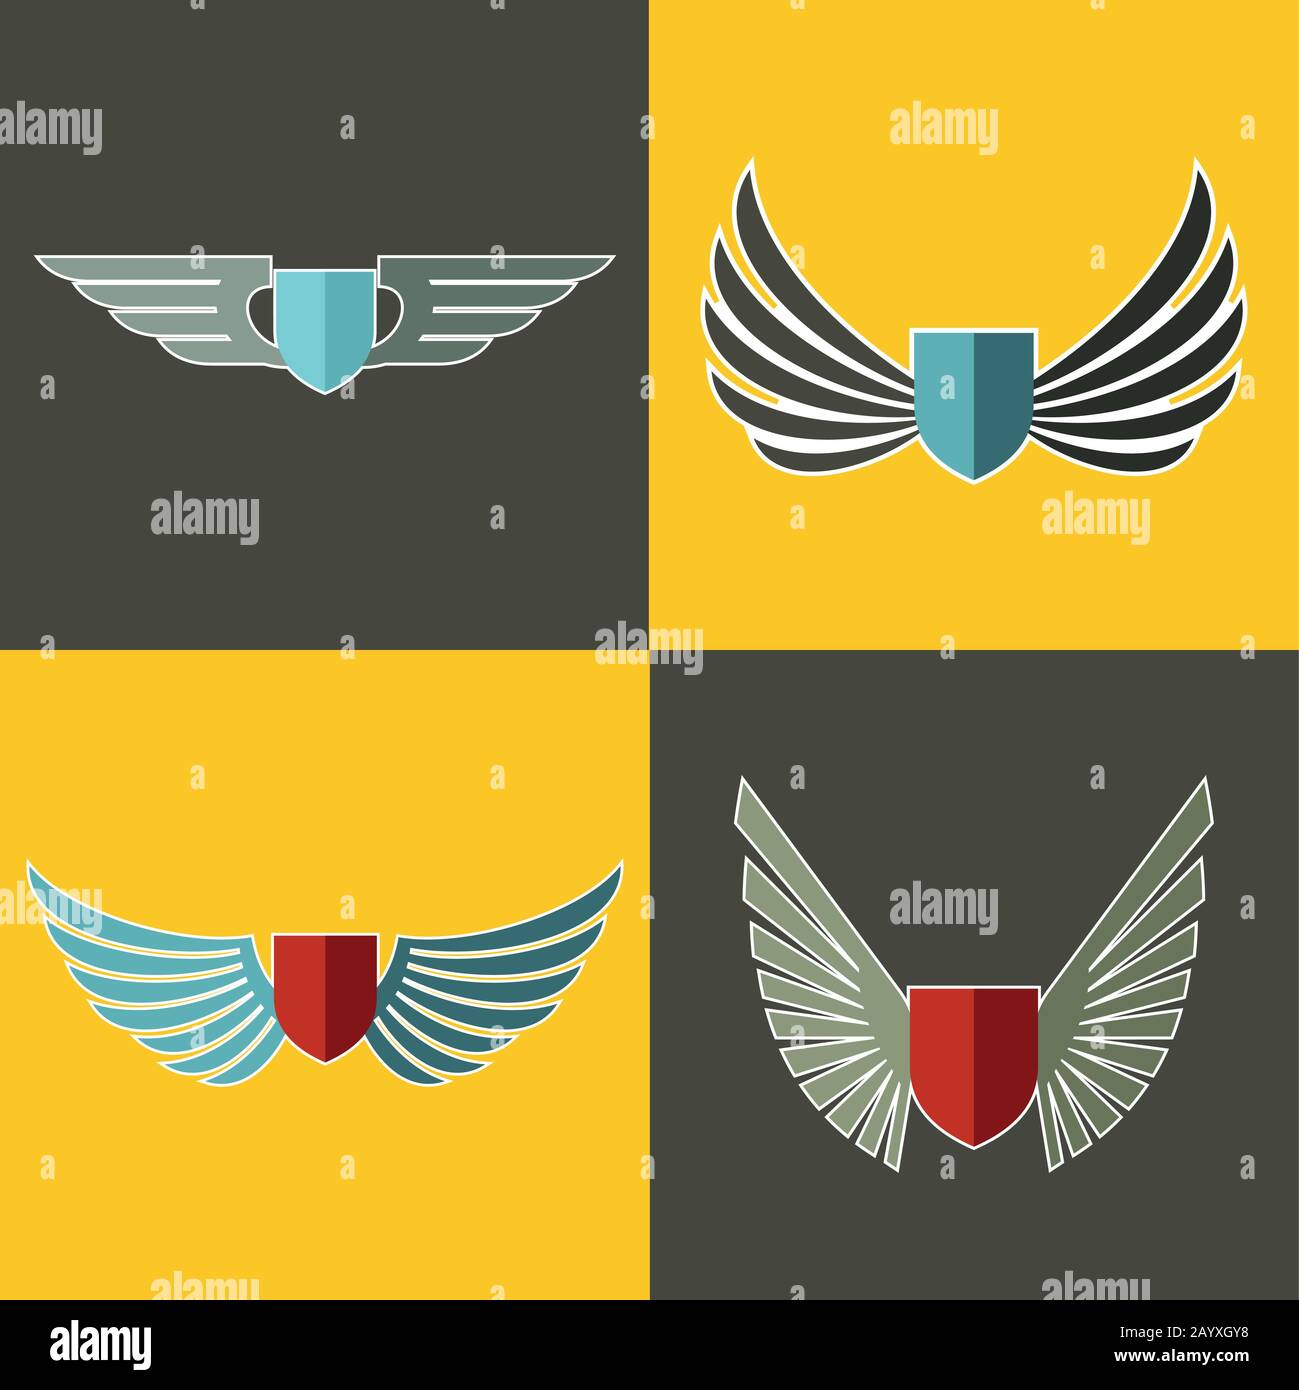 Wings Logo für Unternehmen auf gelbem und braunem Hintergrund. Satz Logotyp mit Schild. Vektorgrafiken Stock Vektor